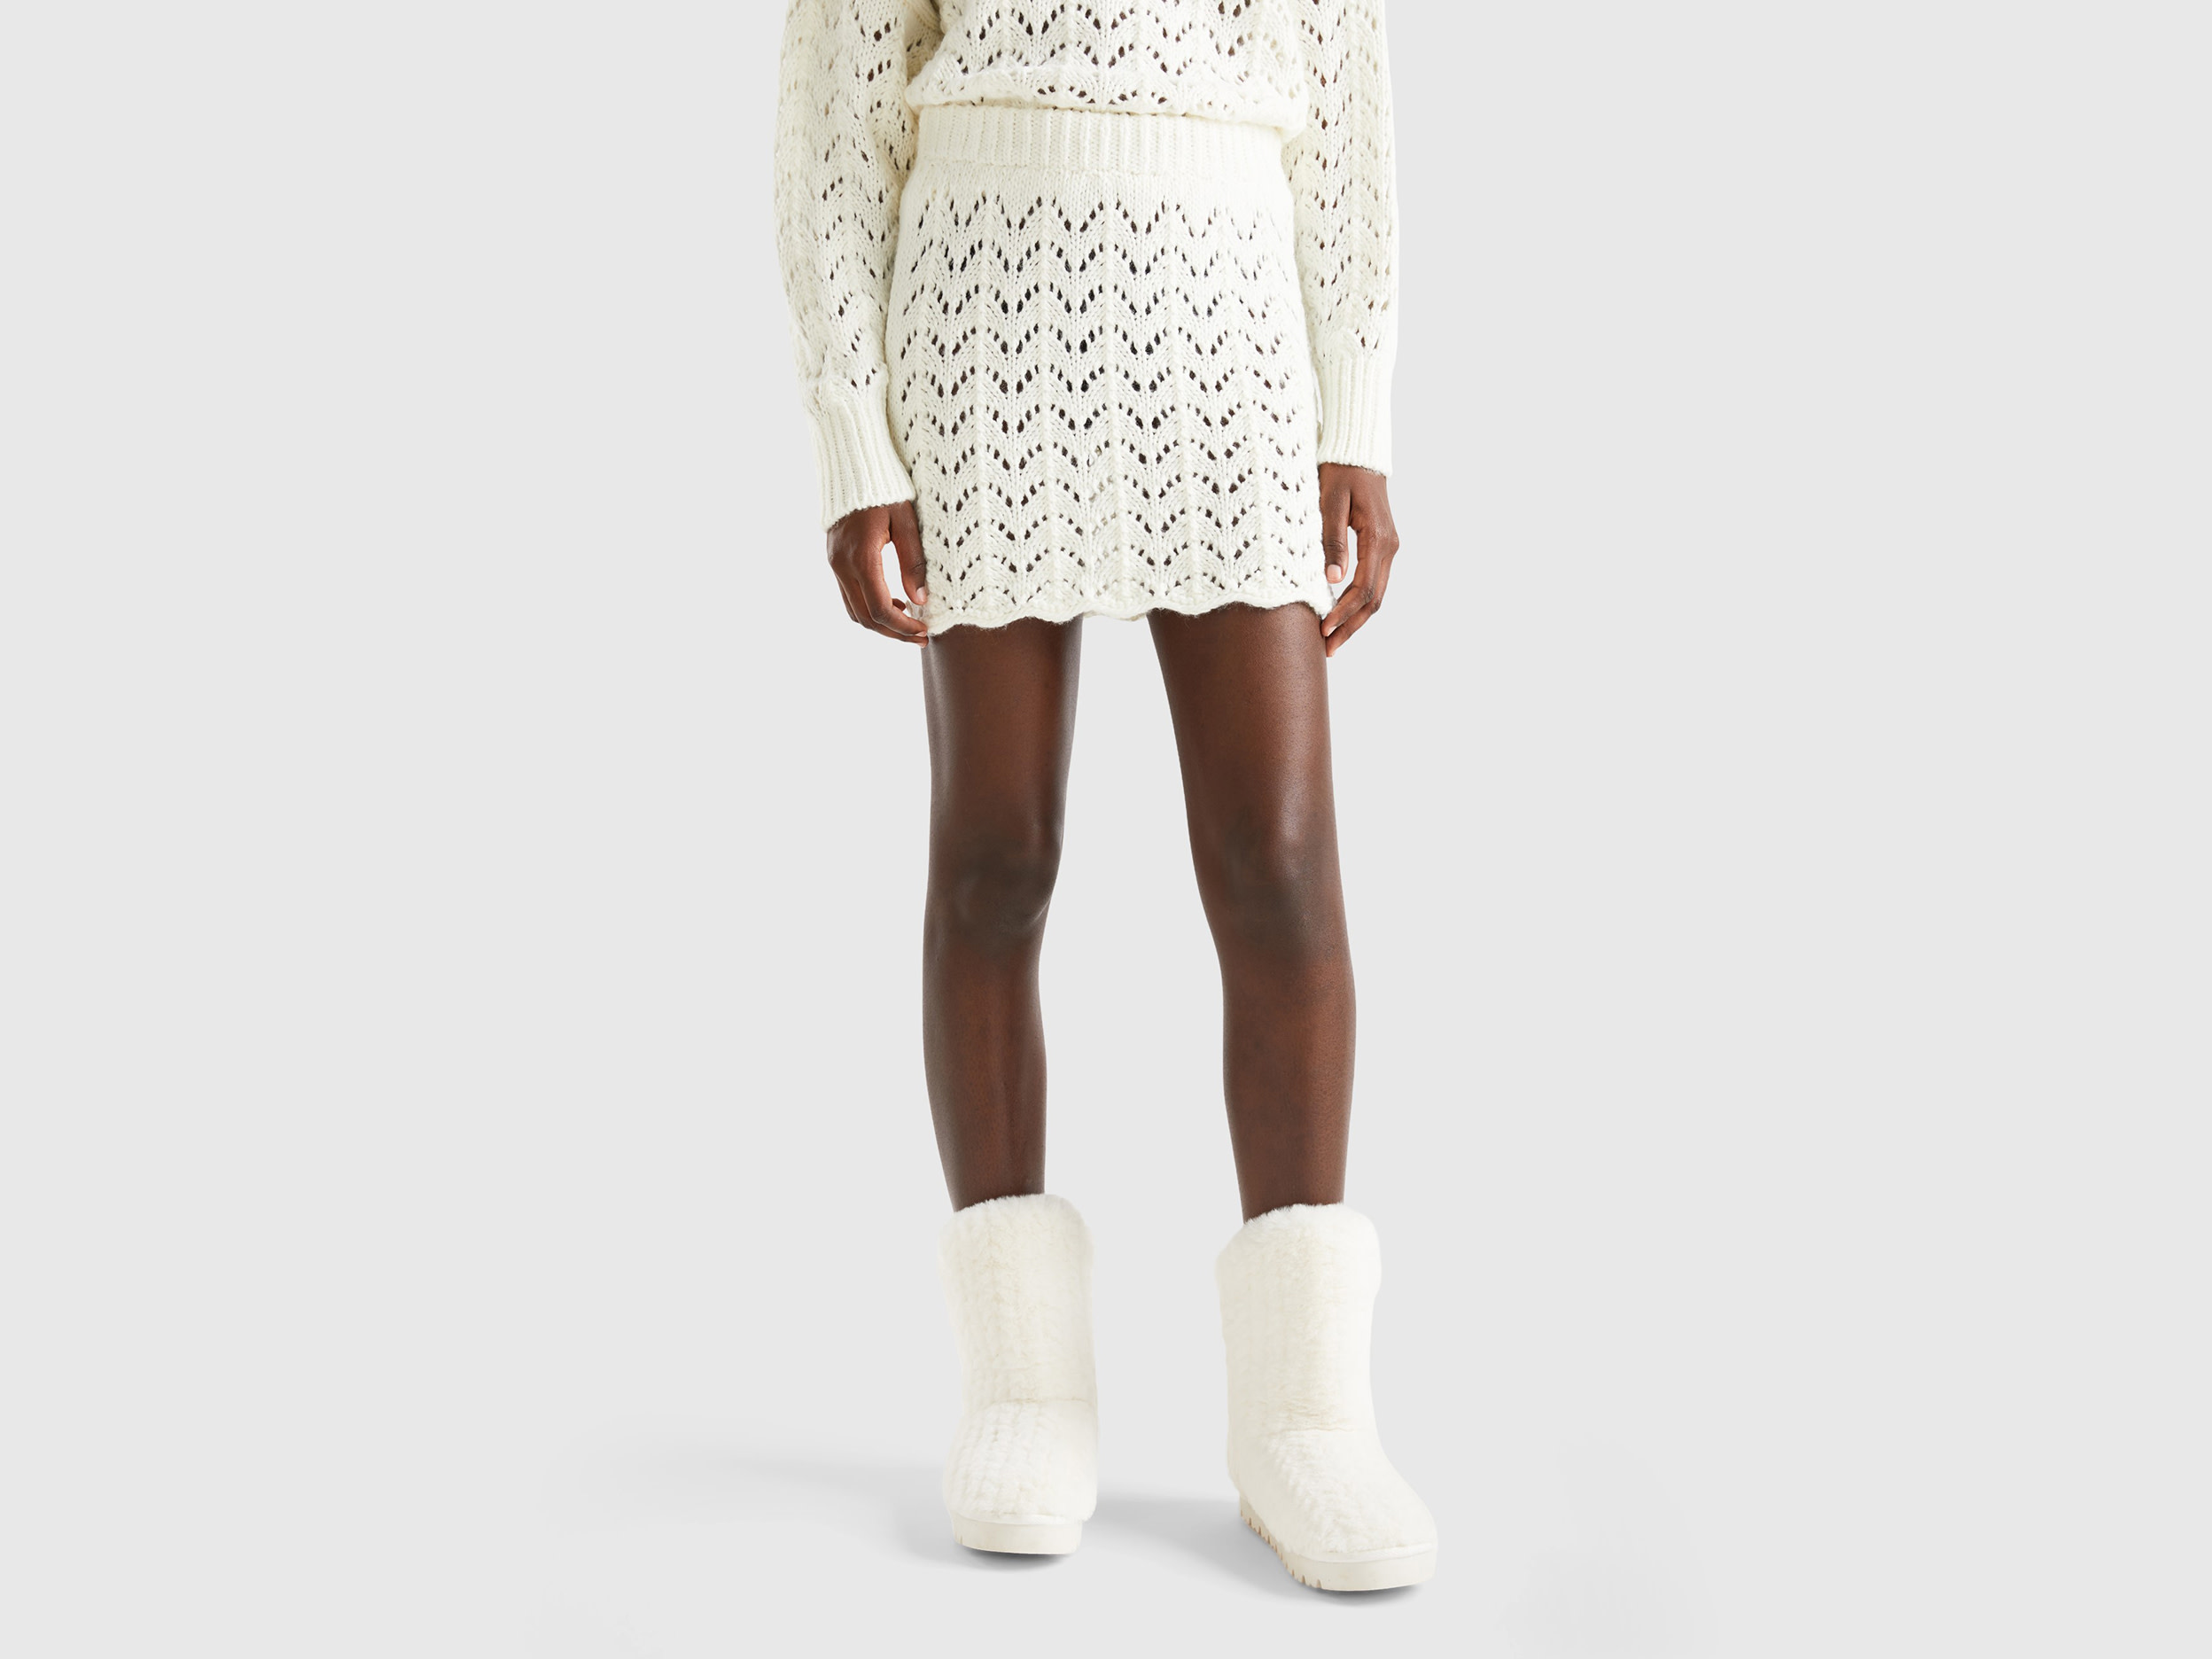 Benetton, Crochet Mini Skirt, size M, White, Women